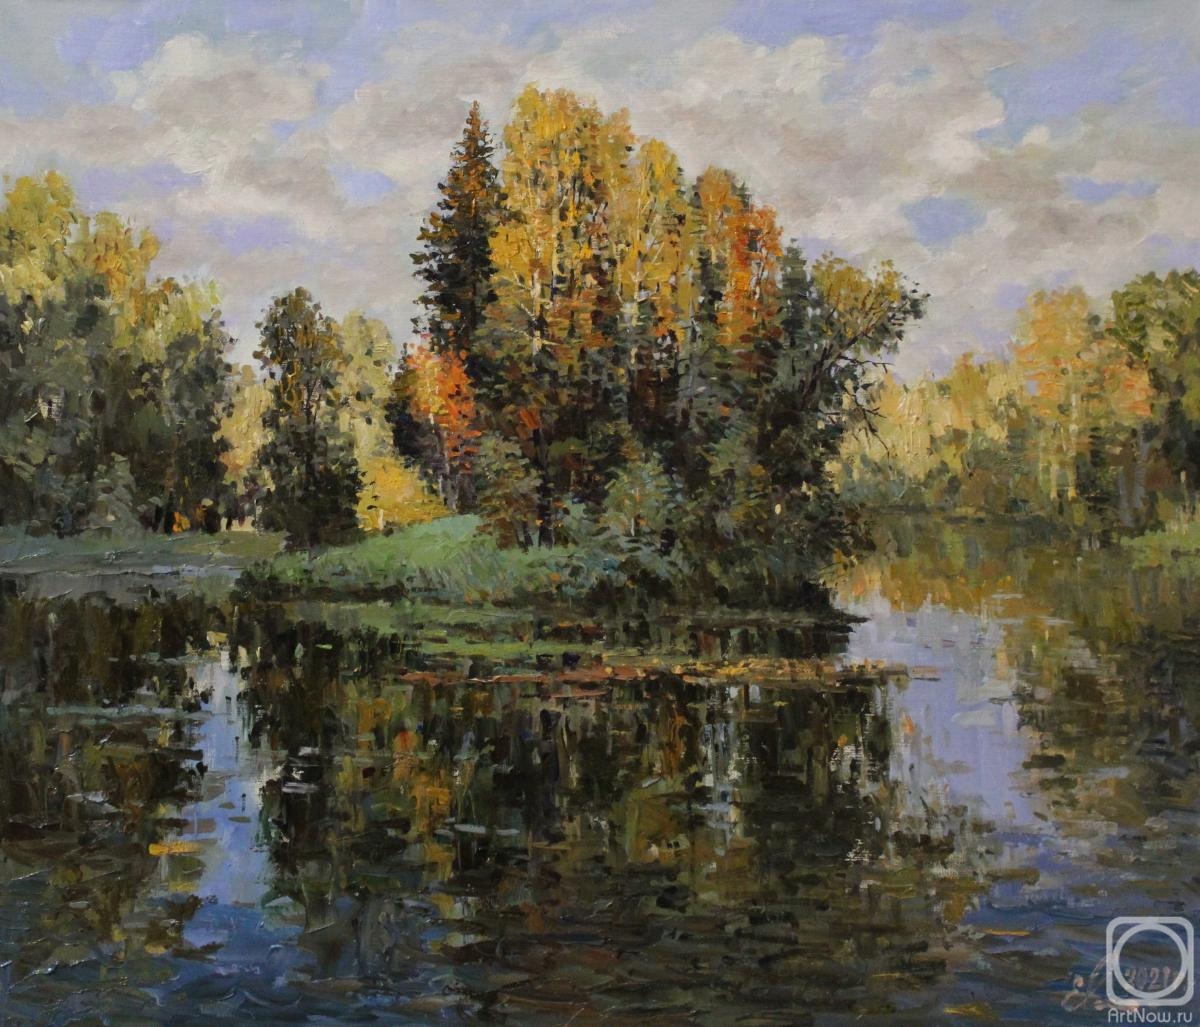 Malykh Evgeny. Autumn